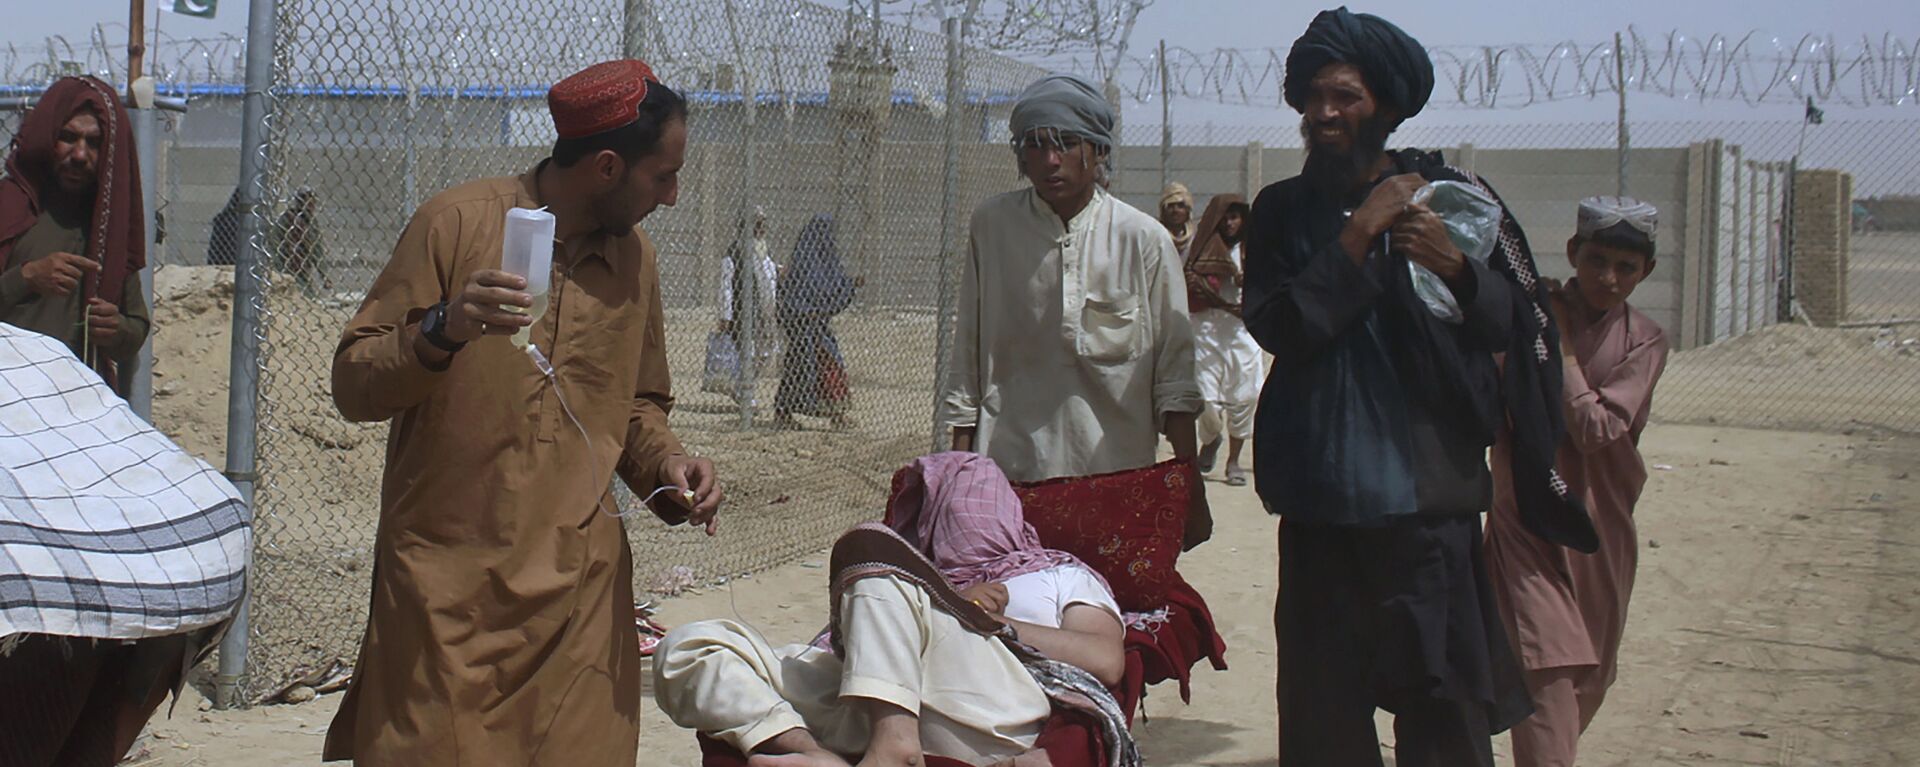 Afganskie bejensi vyezjayut v Pakistan cherez pogranichniy perexod v Chamane - Sputnik O‘zbekiston, 1920, 26.08.2021